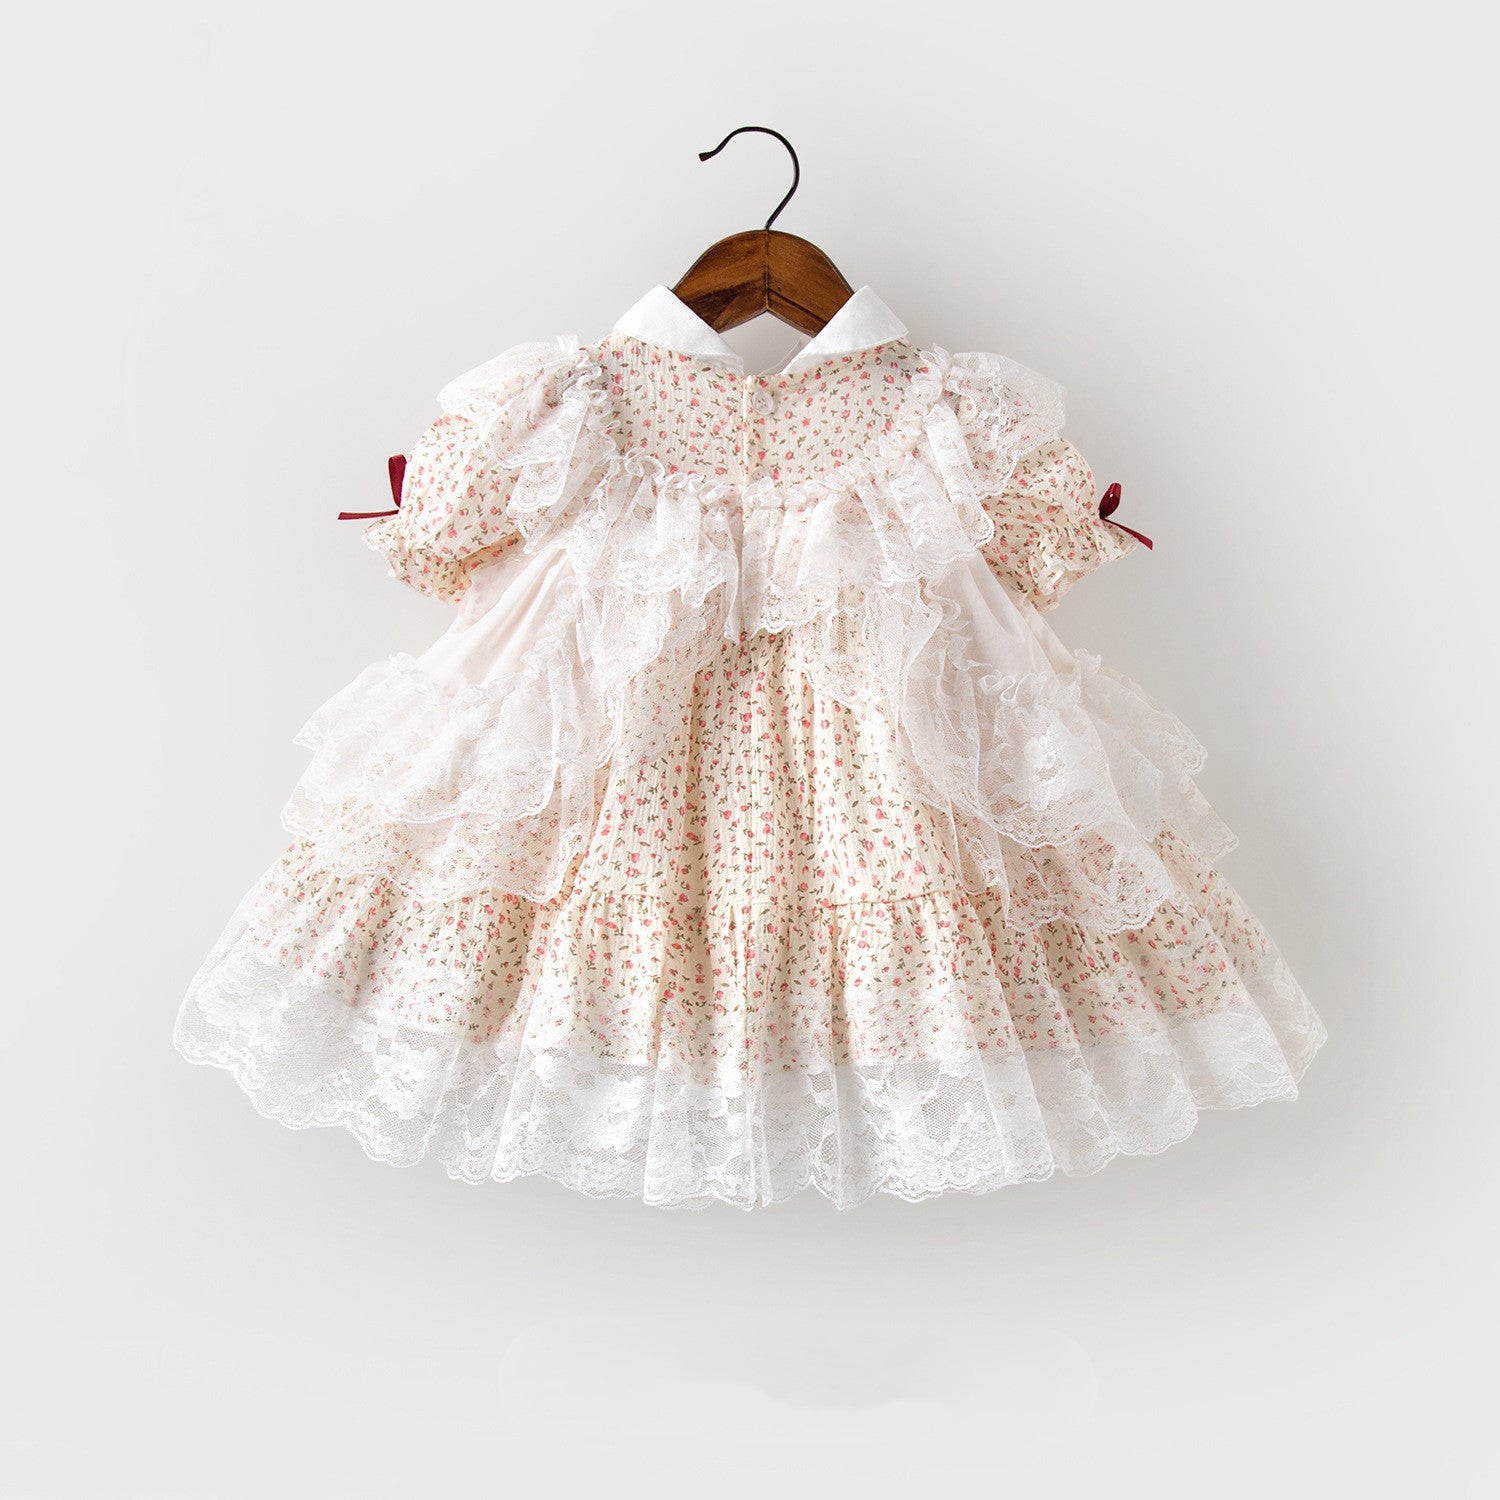 فستان الأميرة الصغيرة تصميم فكتوري